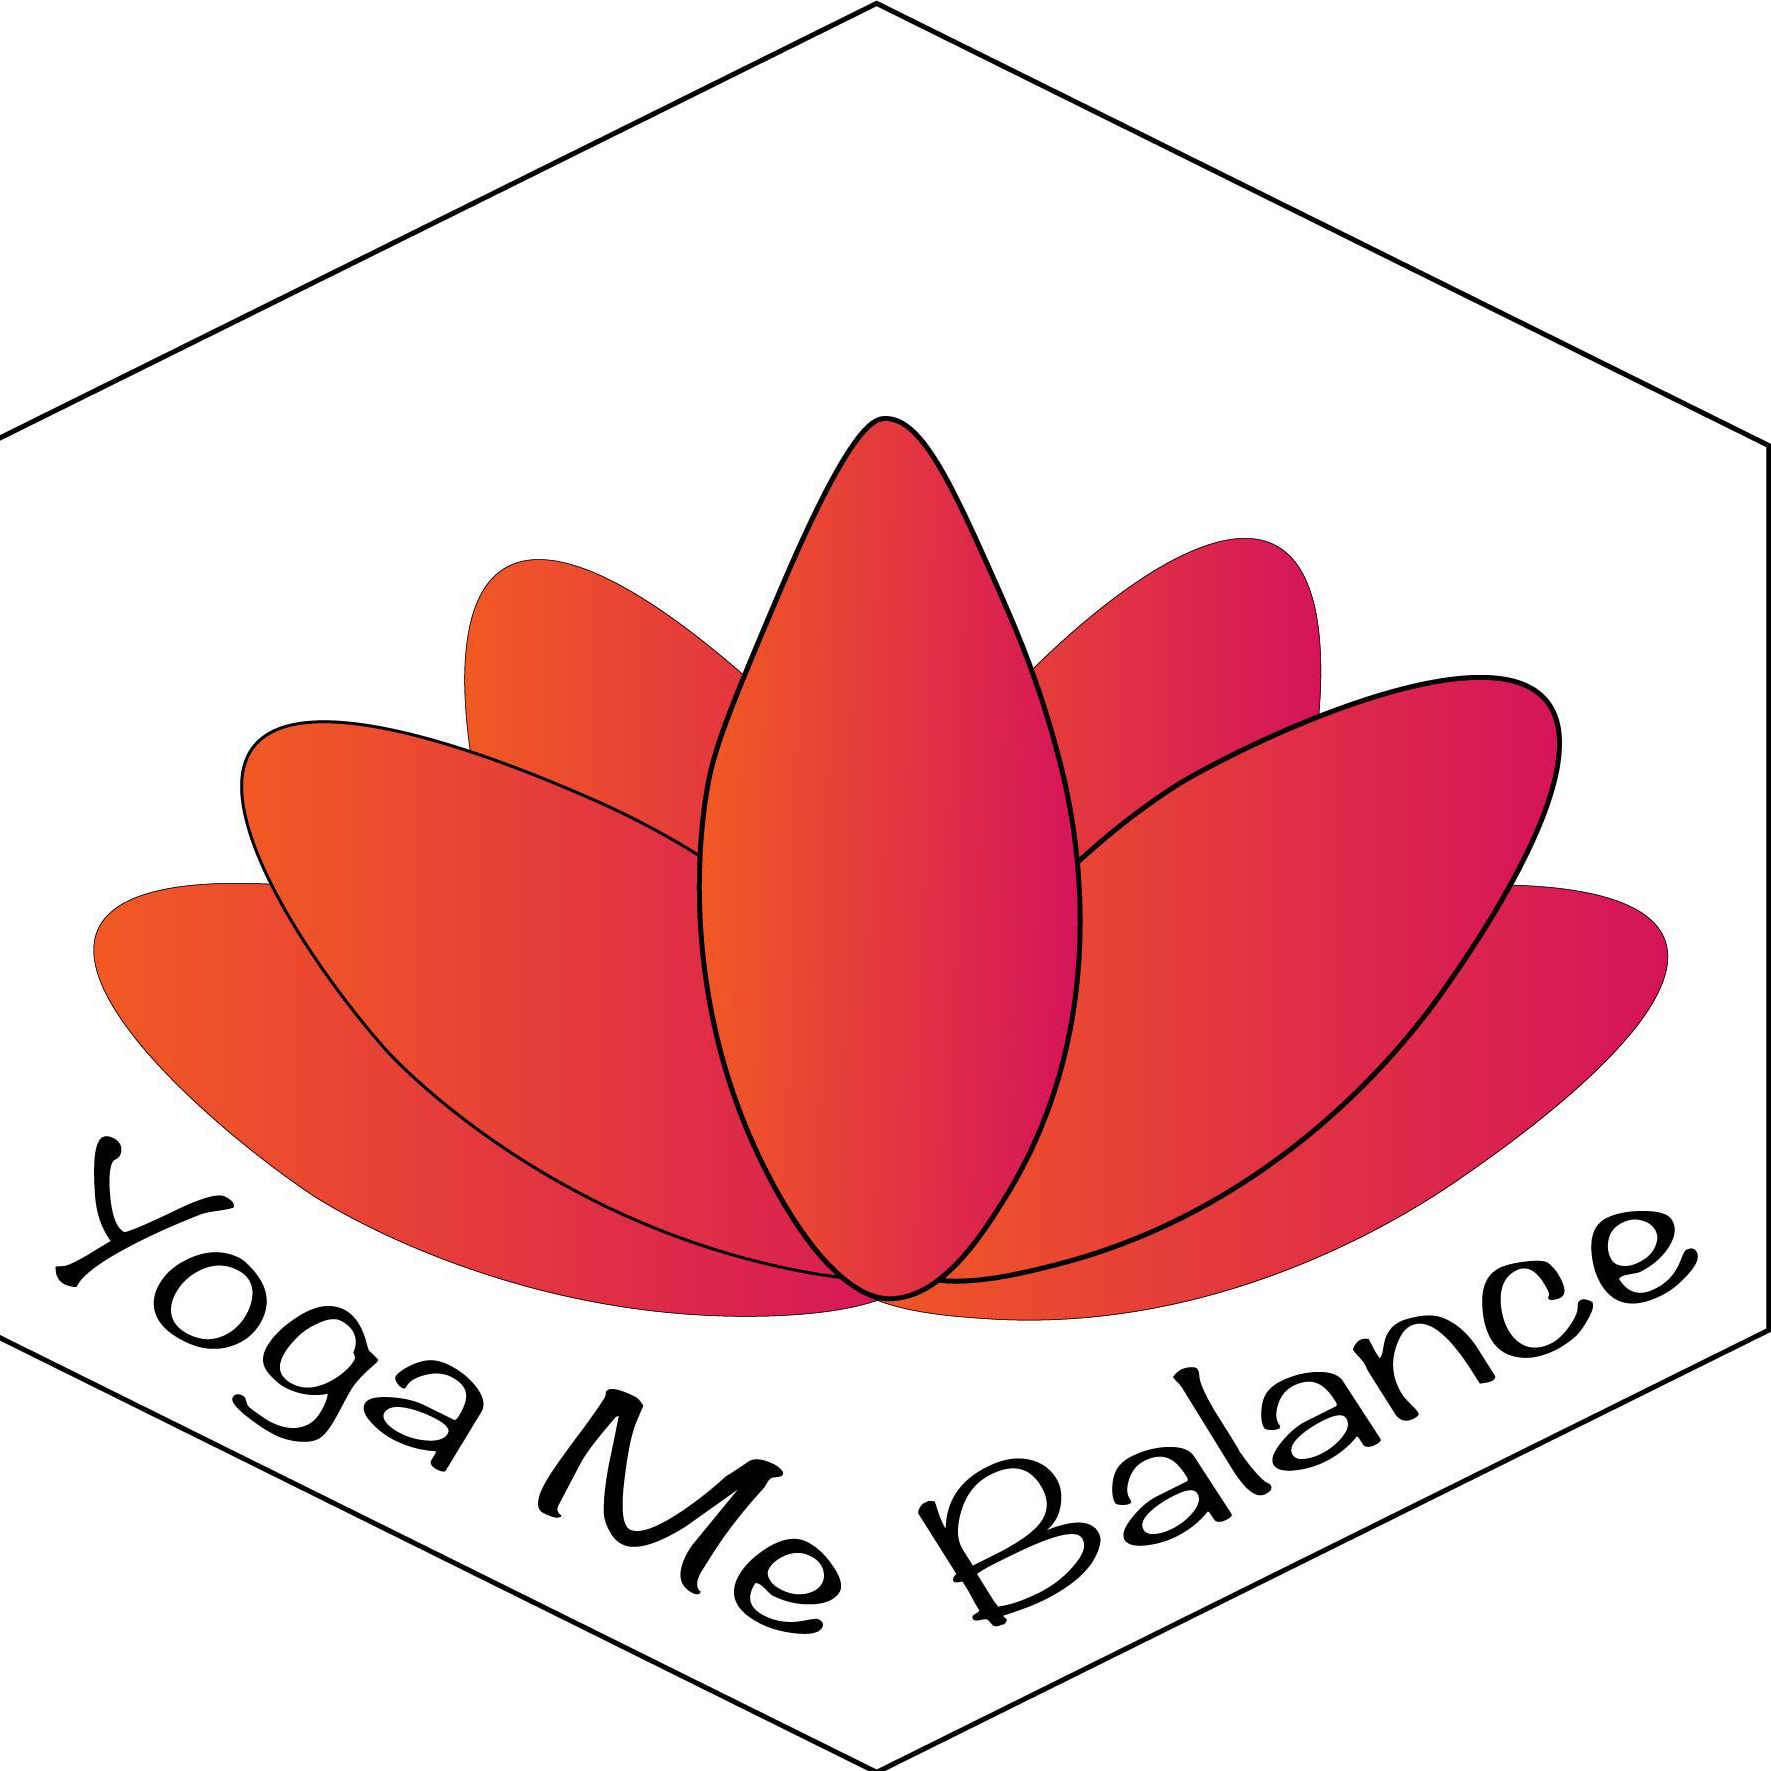 Yoga Me Balance —>